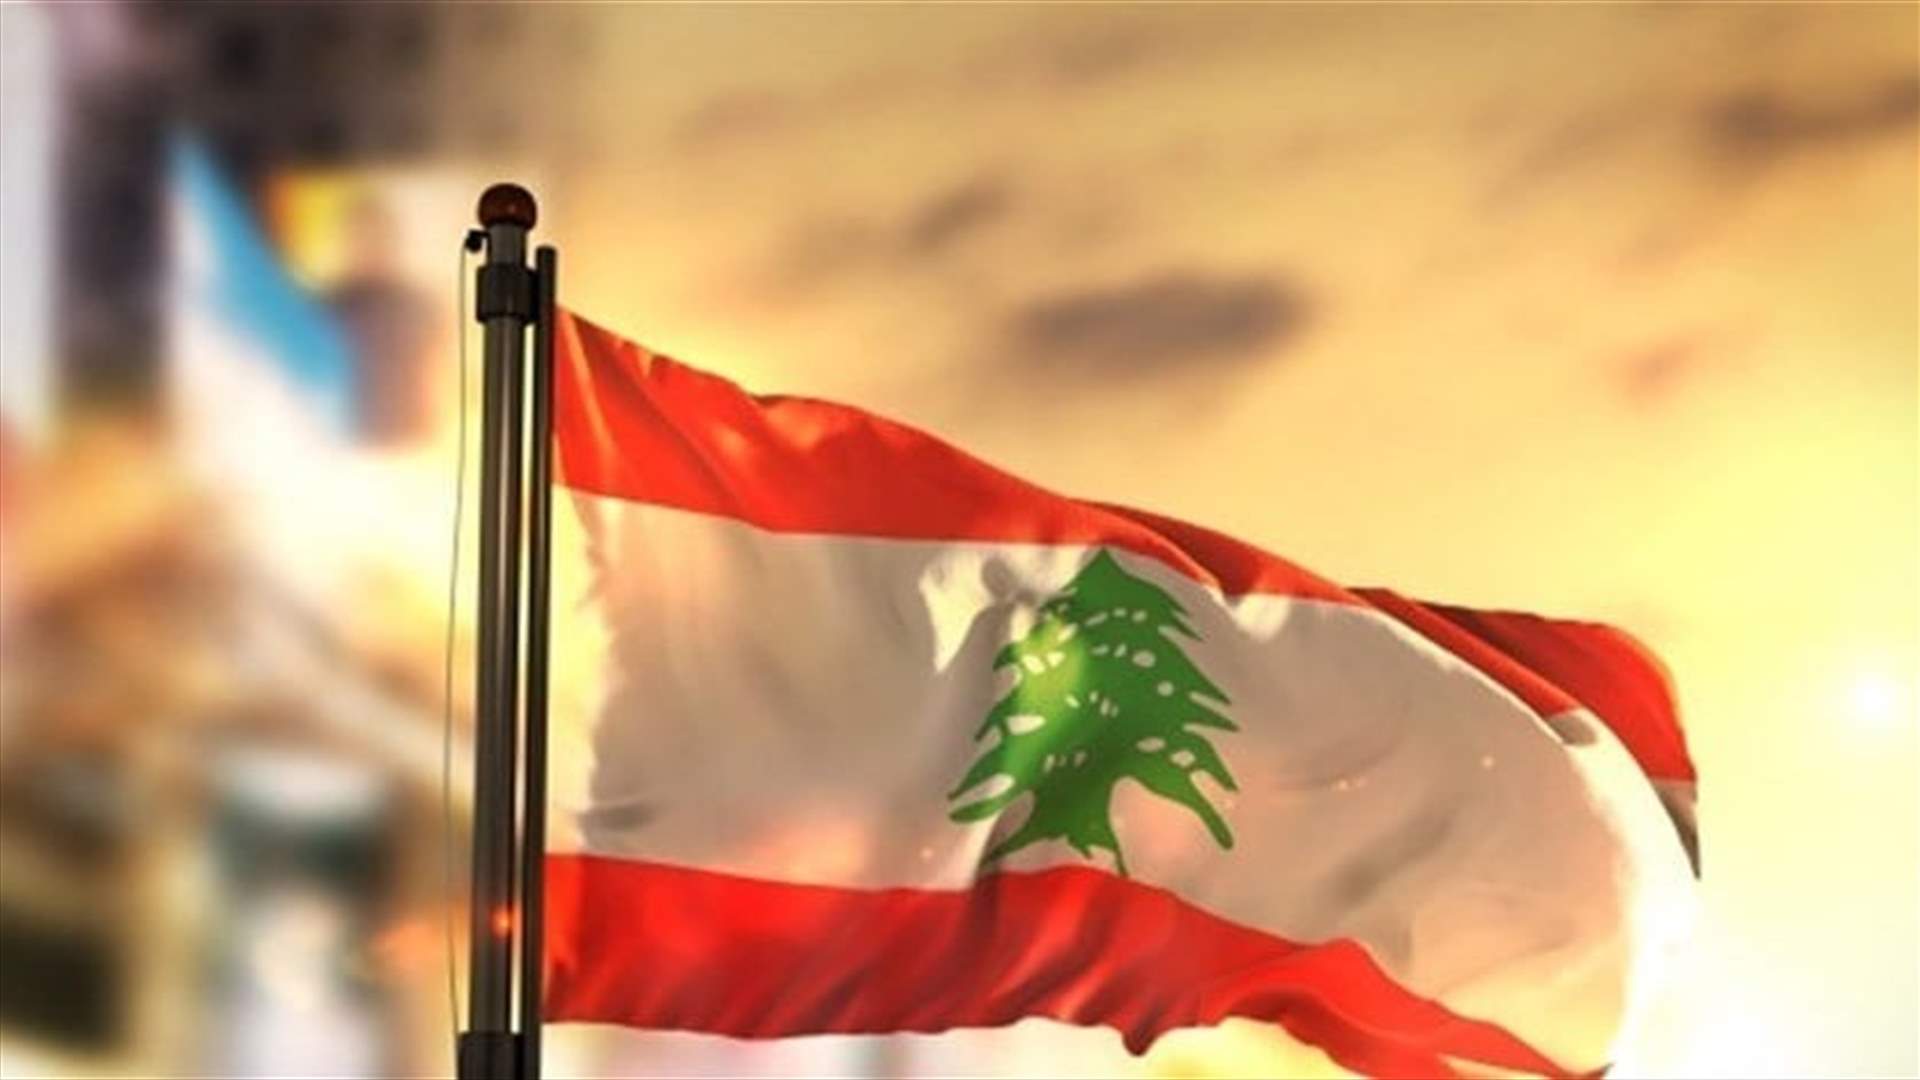 مسؤول مالي دولي لمسؤولين لبنانيين: عواقب وخيمة باتت على وشك ان تضرب الواقع اللبناني (الجمهورية)